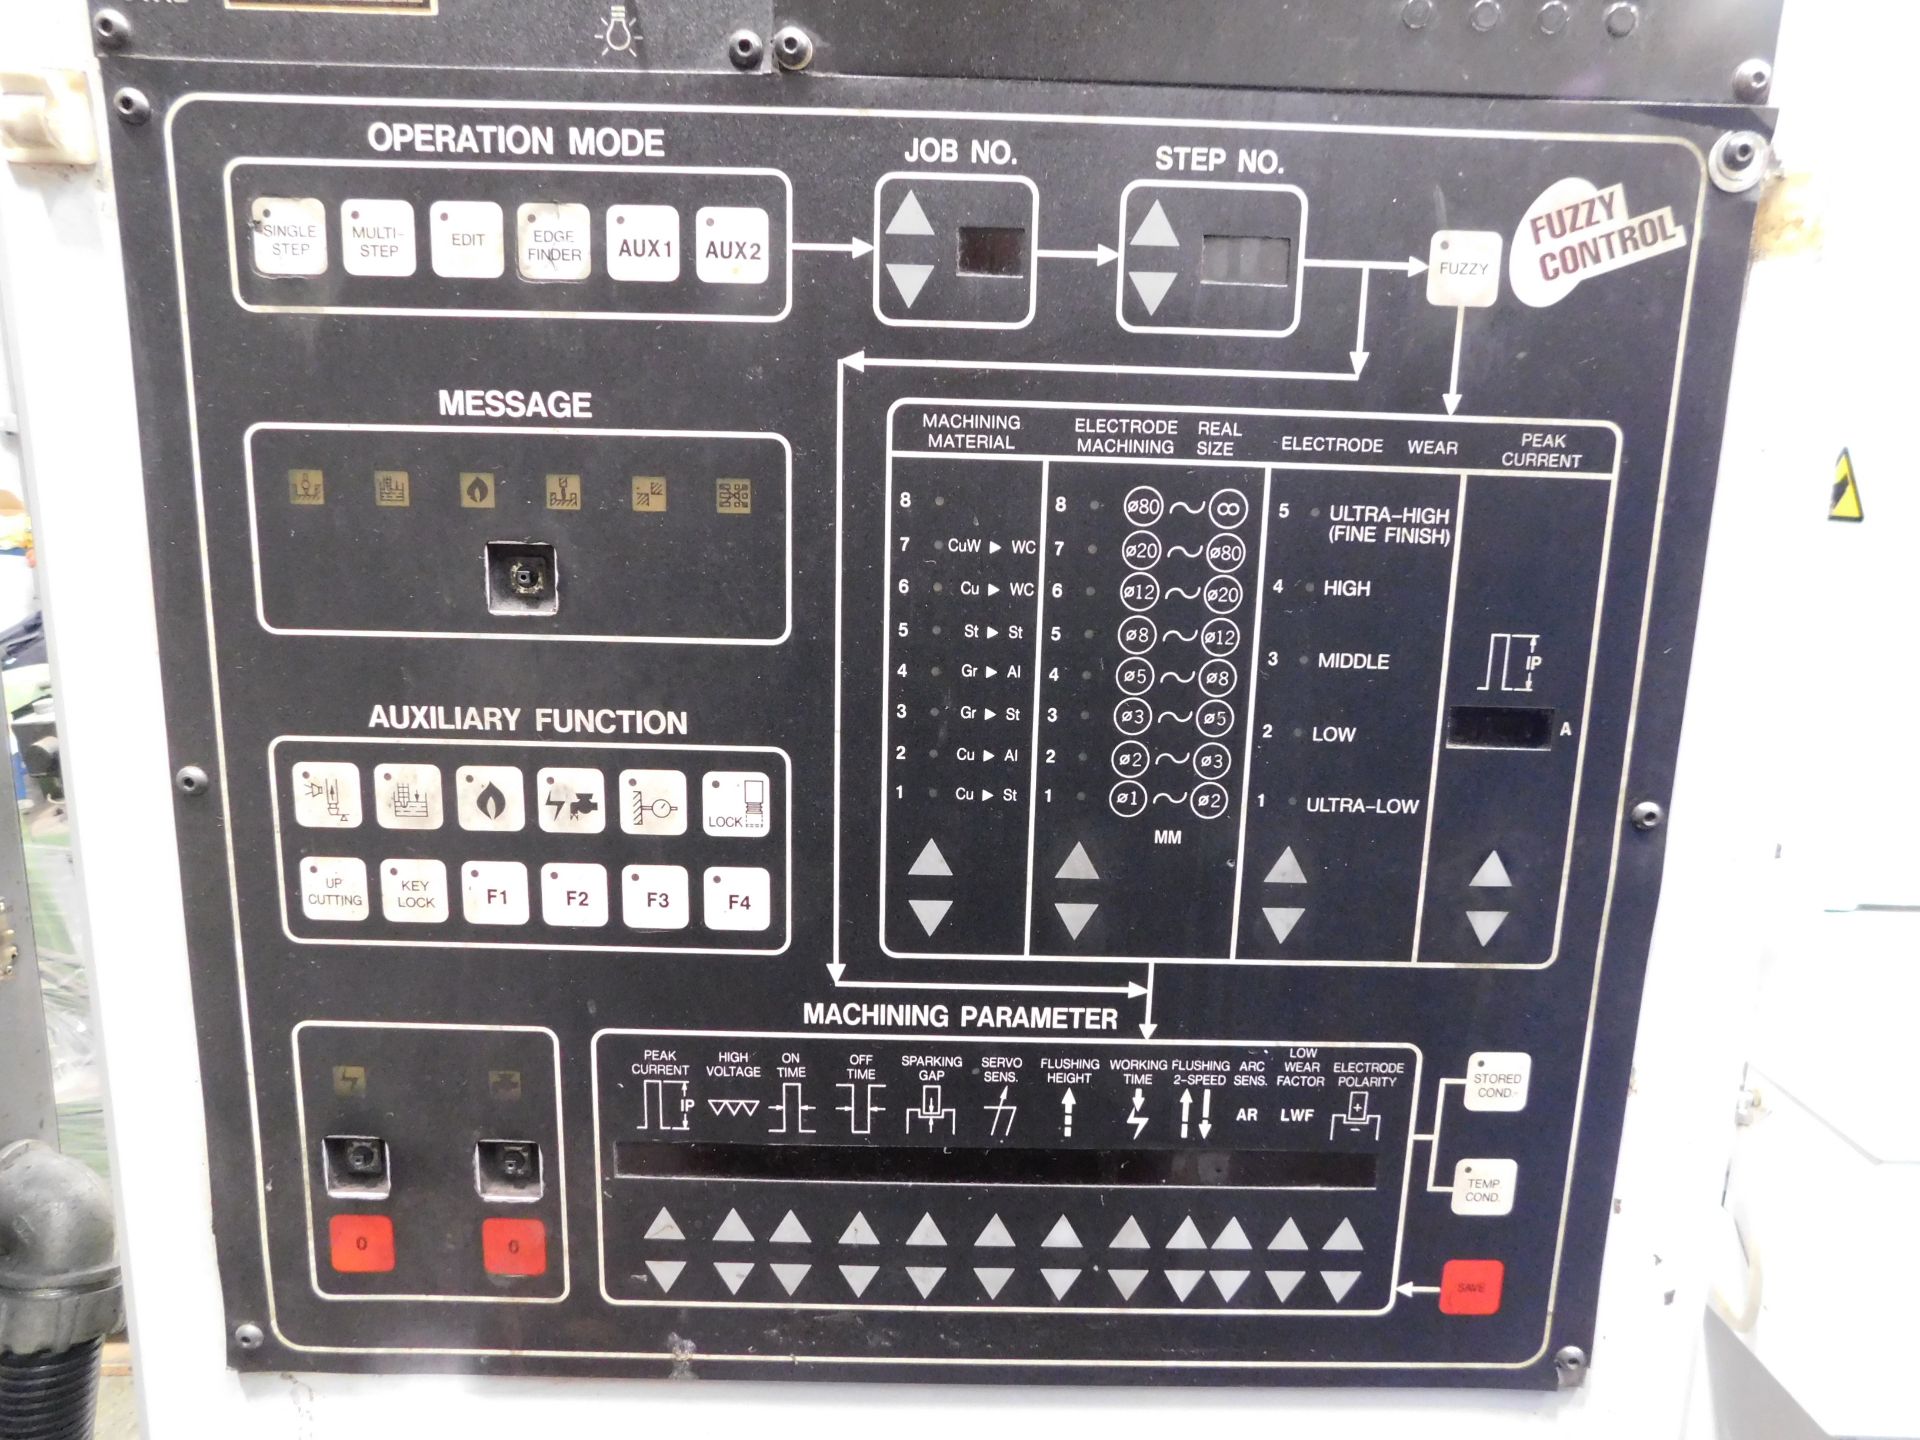 Joemars EDM 600 Centre Manual Spark Eroding Machine, Model Number JM430, Serial Number 9072827 ( - Image 16 of 21